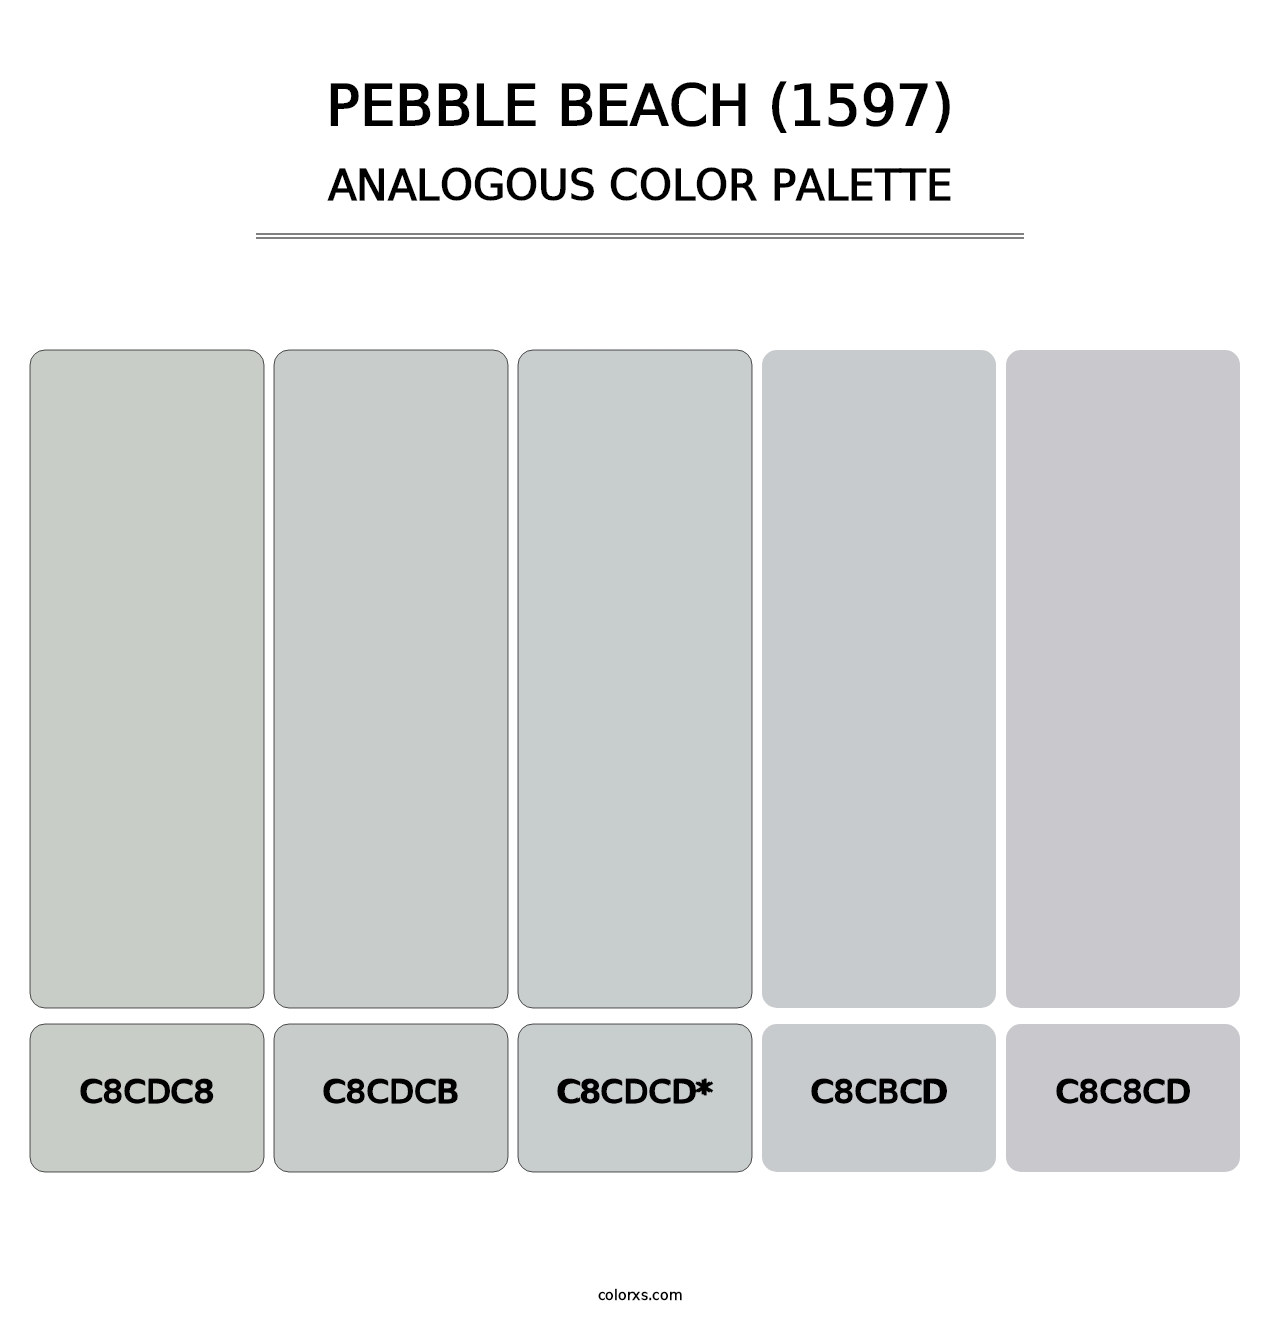 Pebble Beach (1597) - Analogous Color Palette